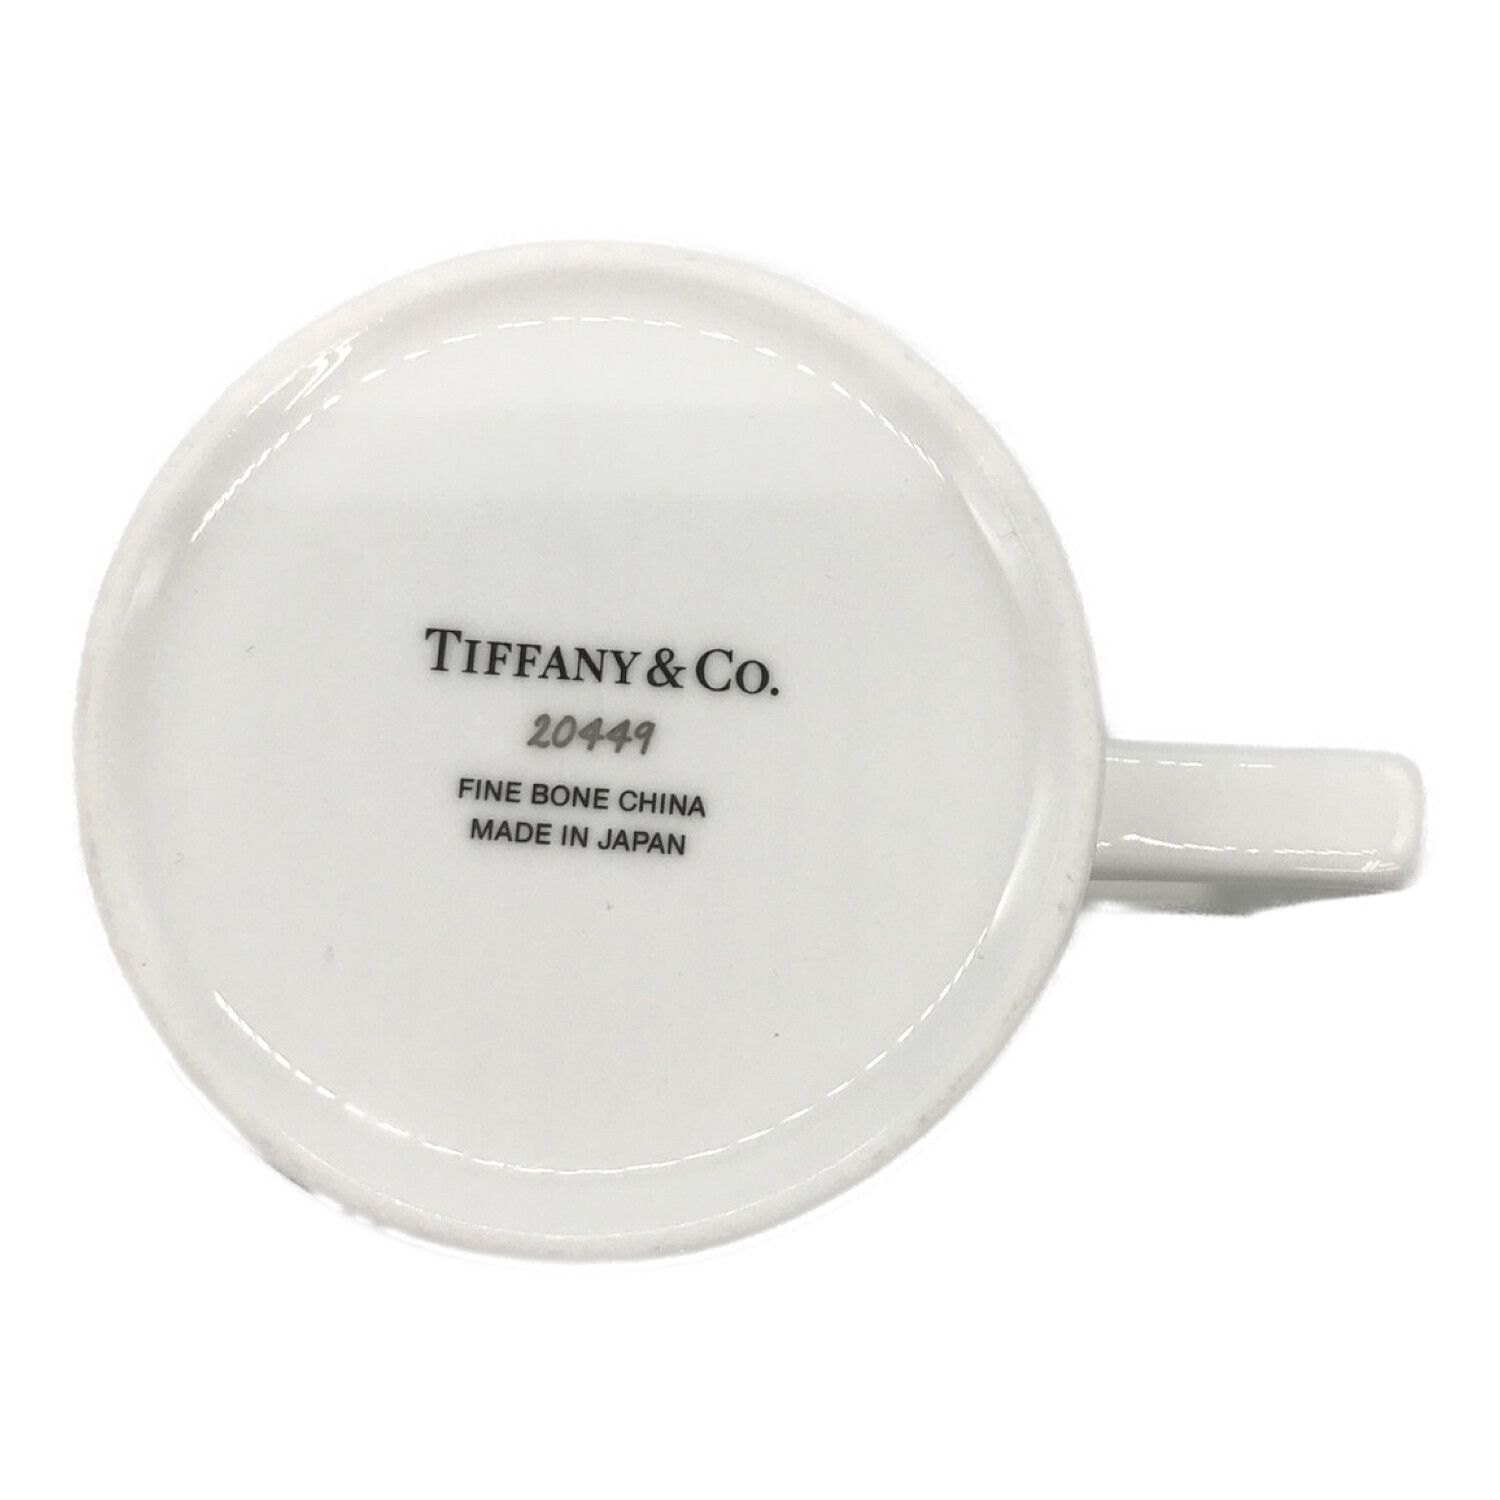 TIFFANY & Co. (ティファニー) マグカップ 20449 NY限定品